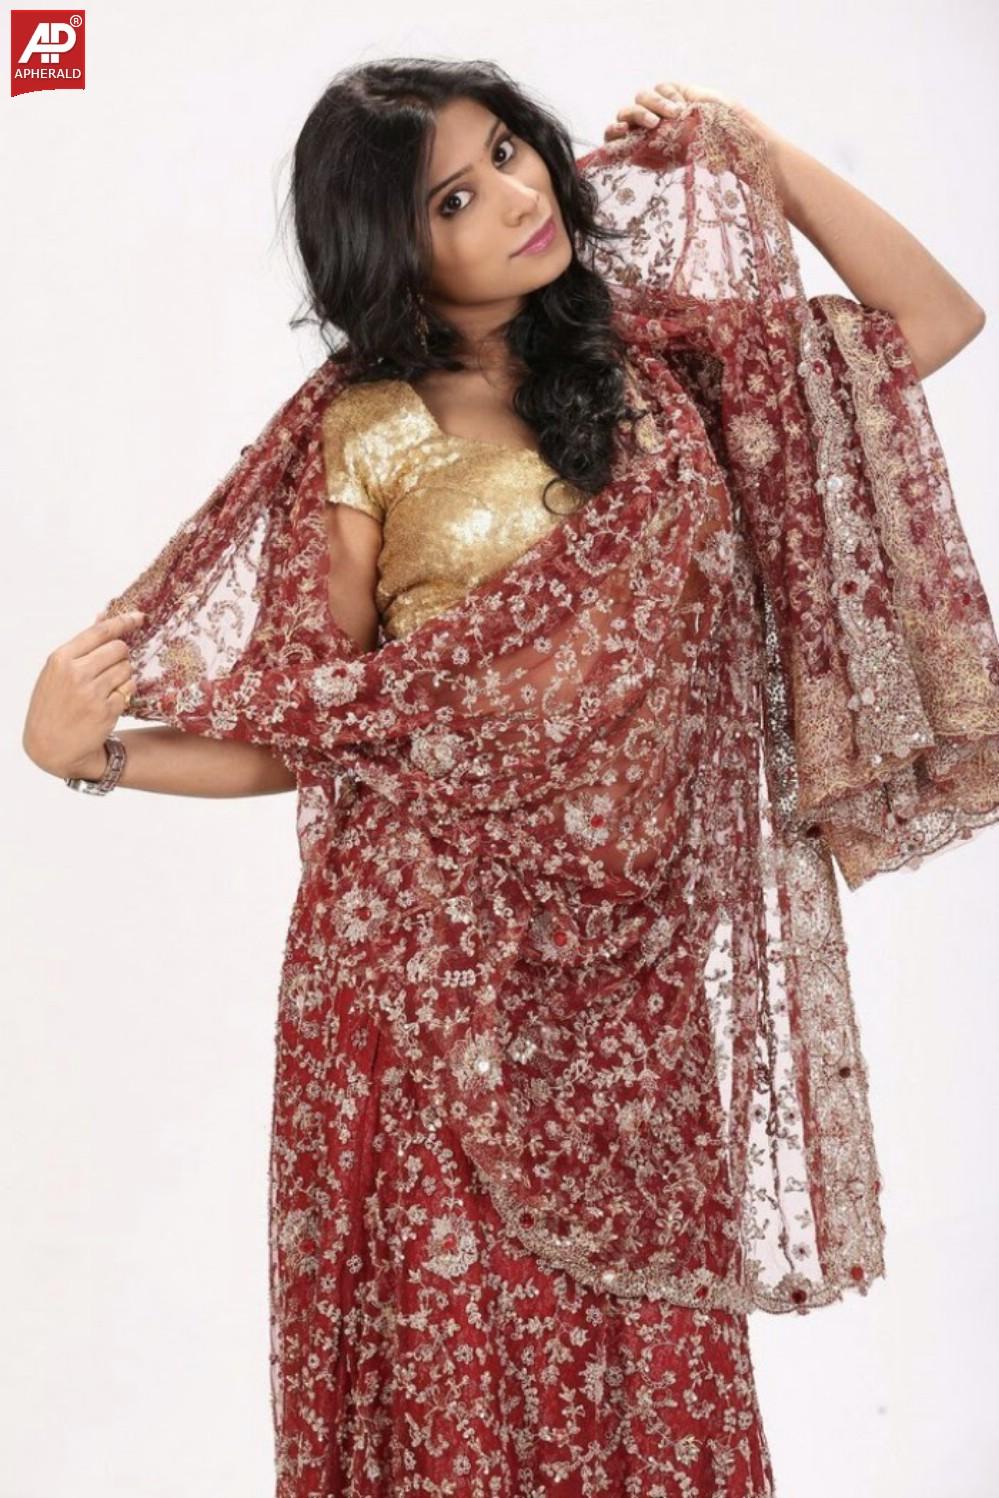 Mithuna Waliya Hot in Saree Photoshoot